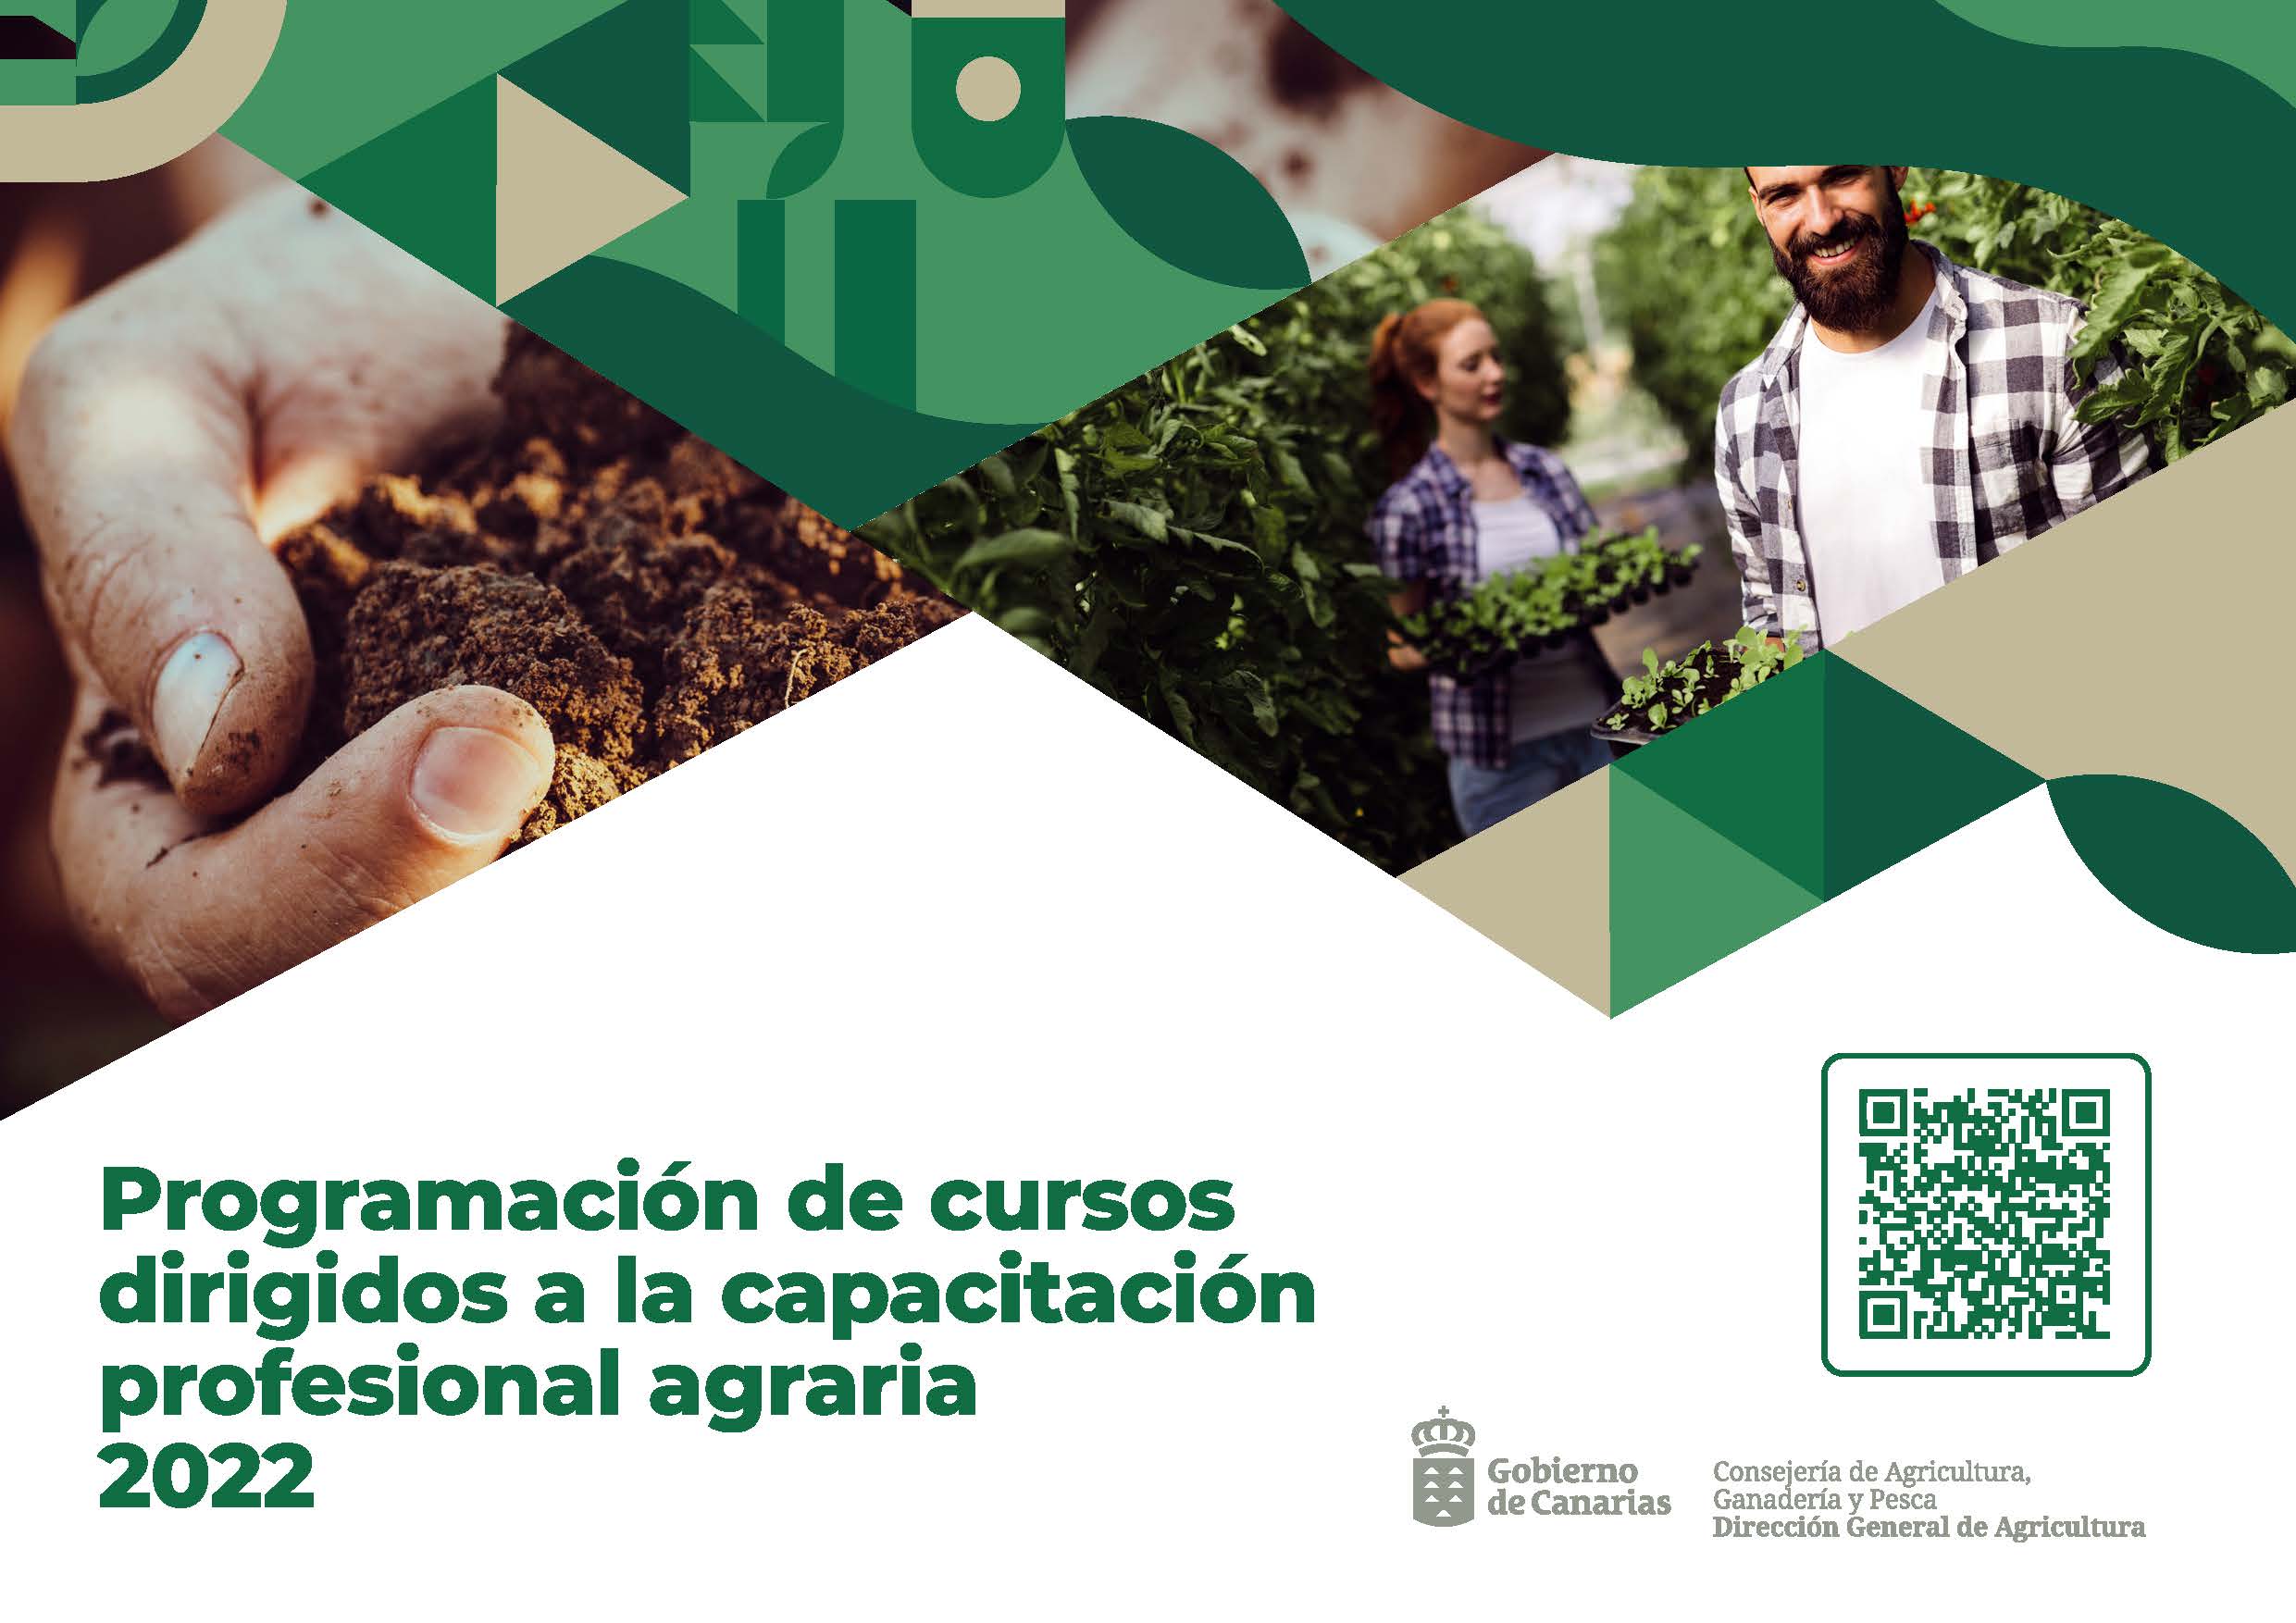 Programación de cursos dirigidos a la capacitación profesional agraria 2022